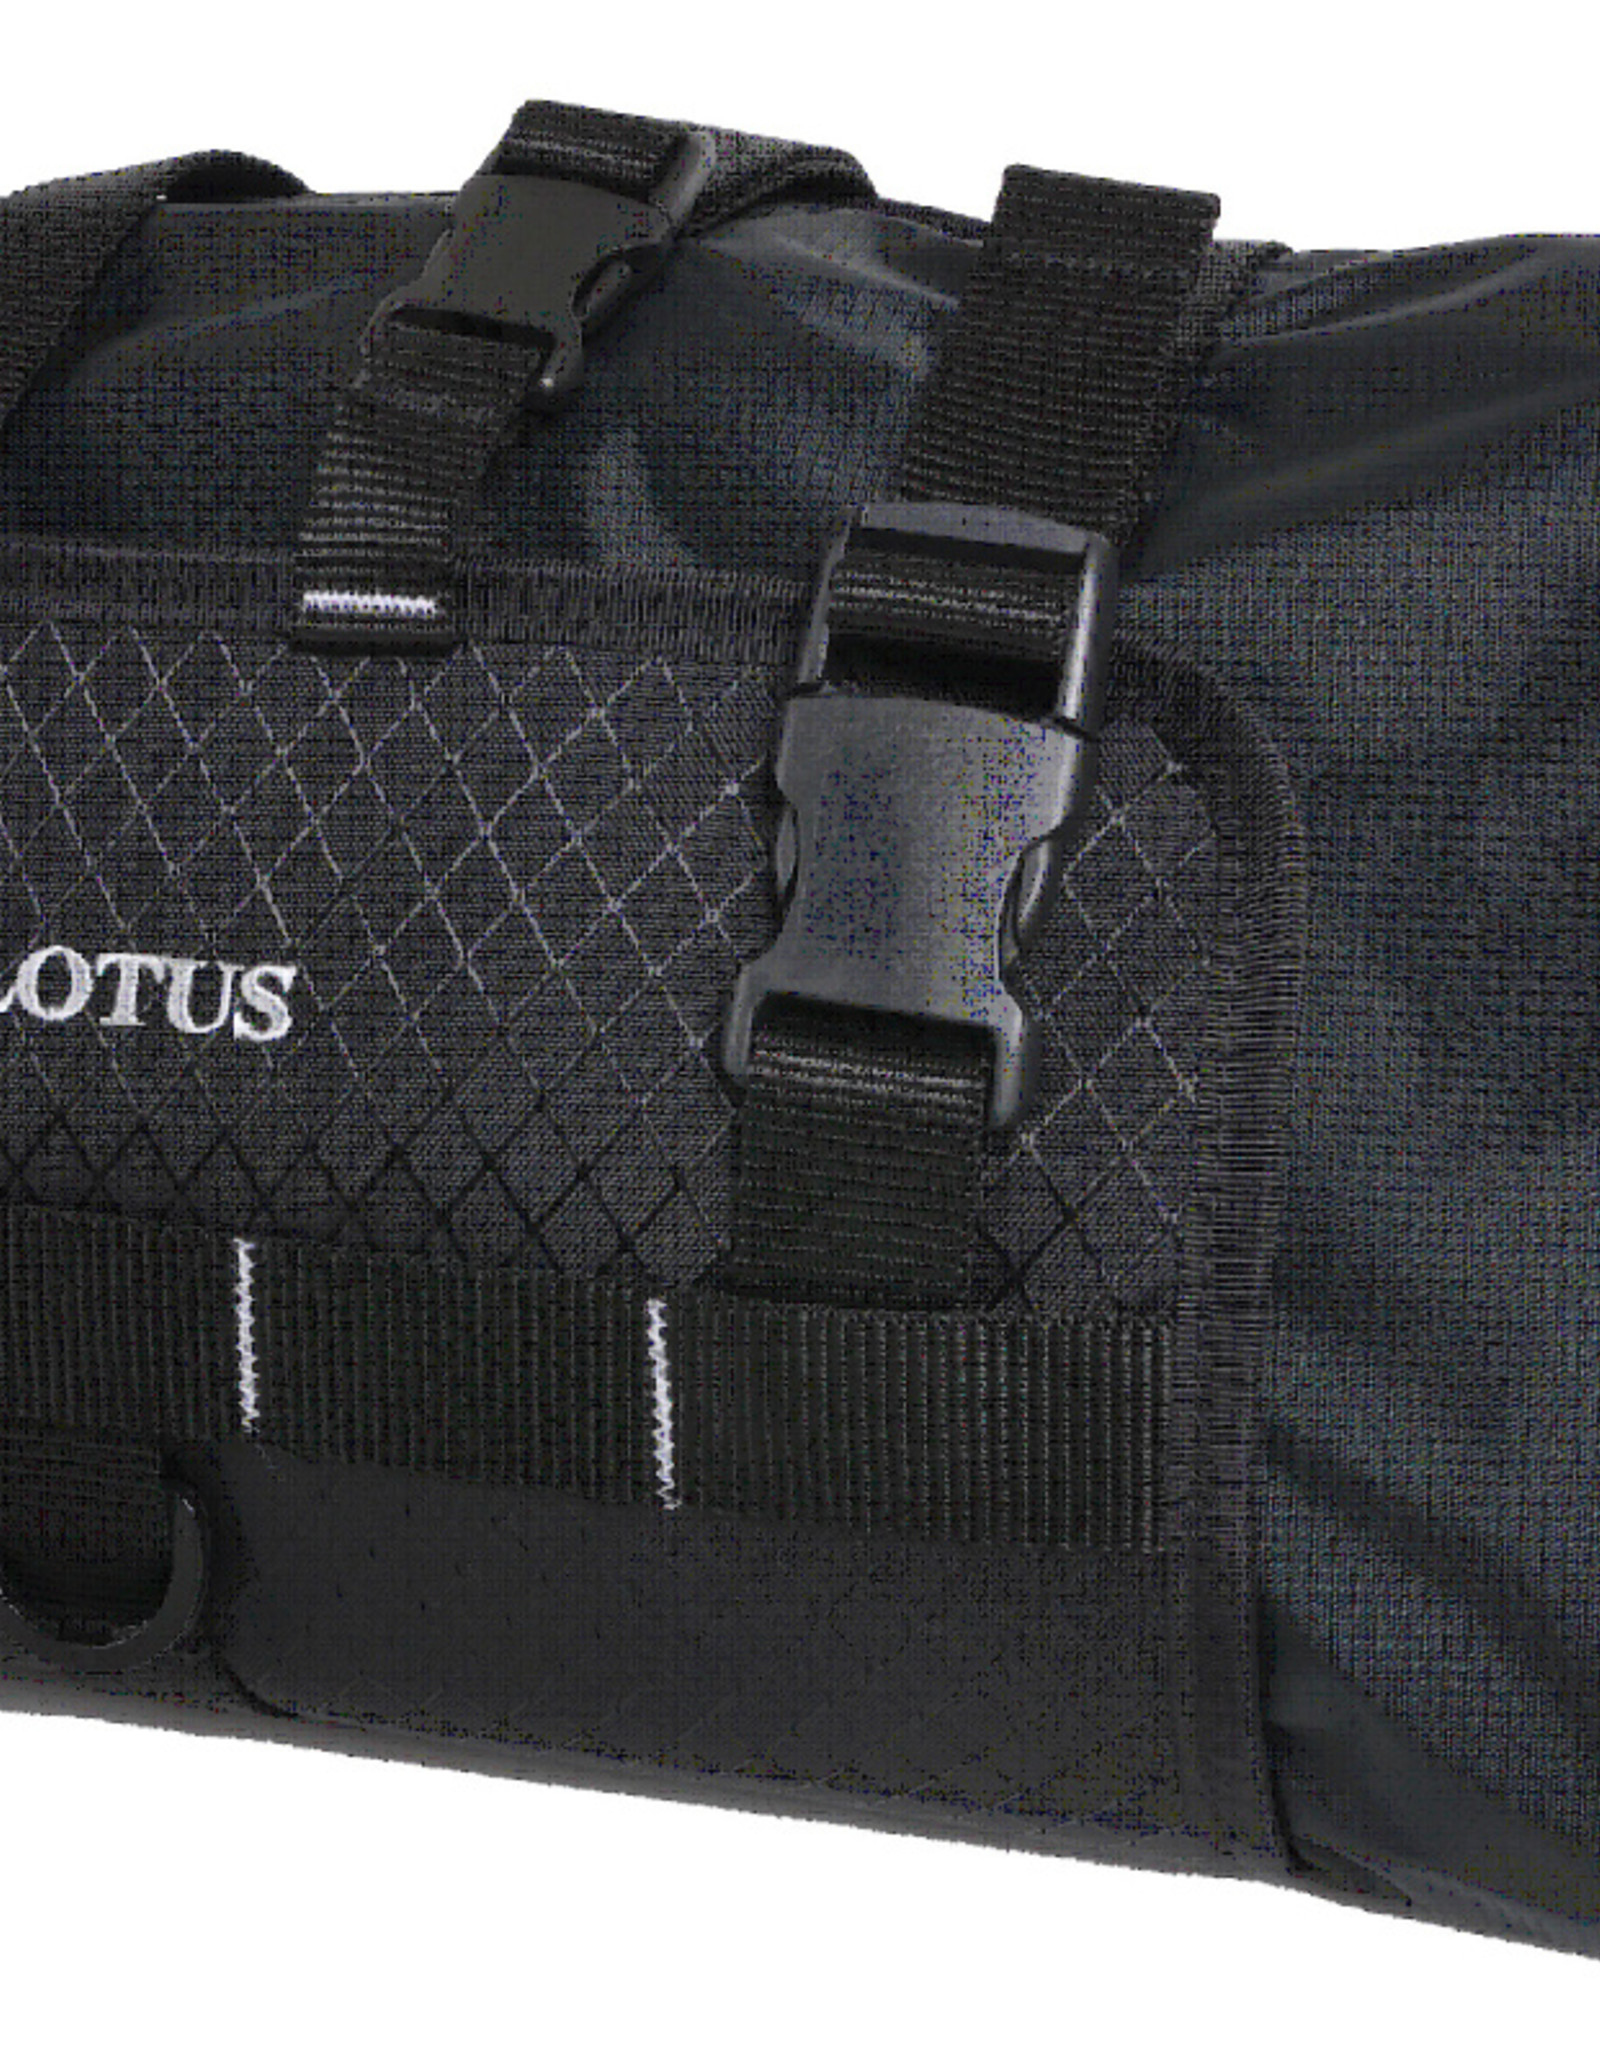 Lotus Explorer Handlebar Bag with Dry Bag (8.8L)